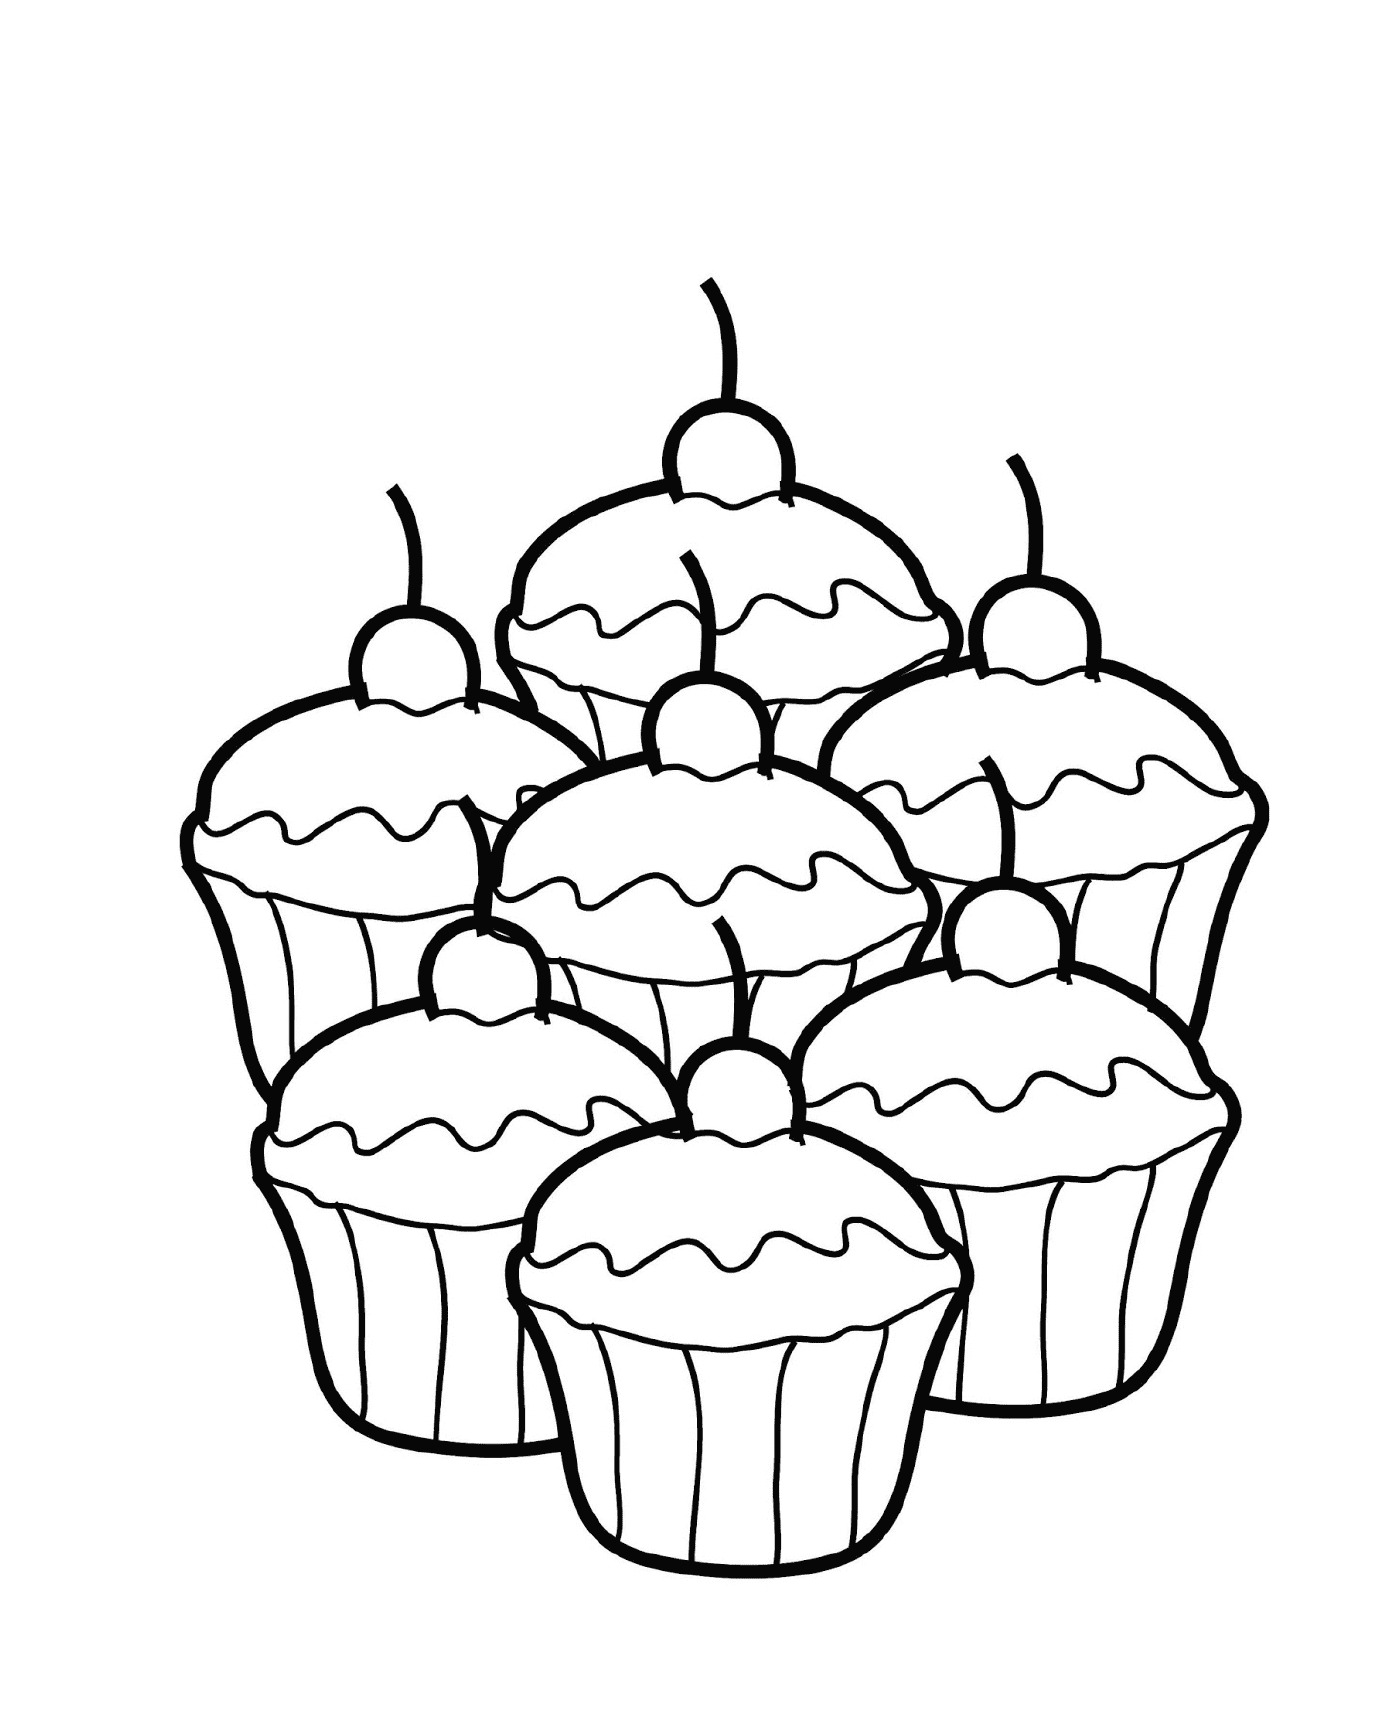  Vier Cupcakes zusammen 